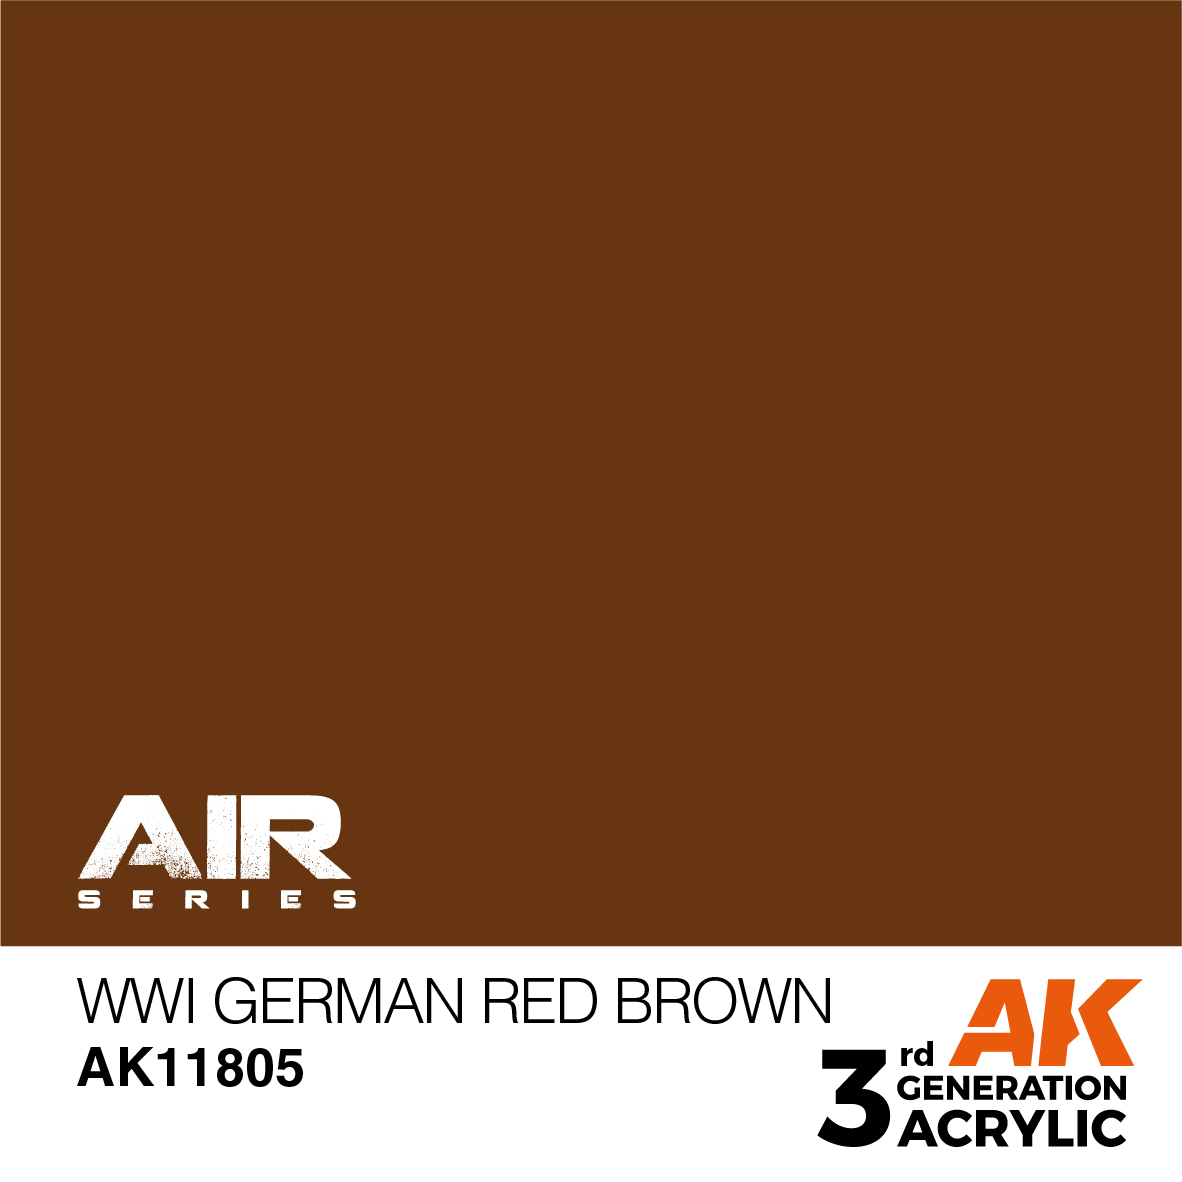 WWI German Red Brown – AIR